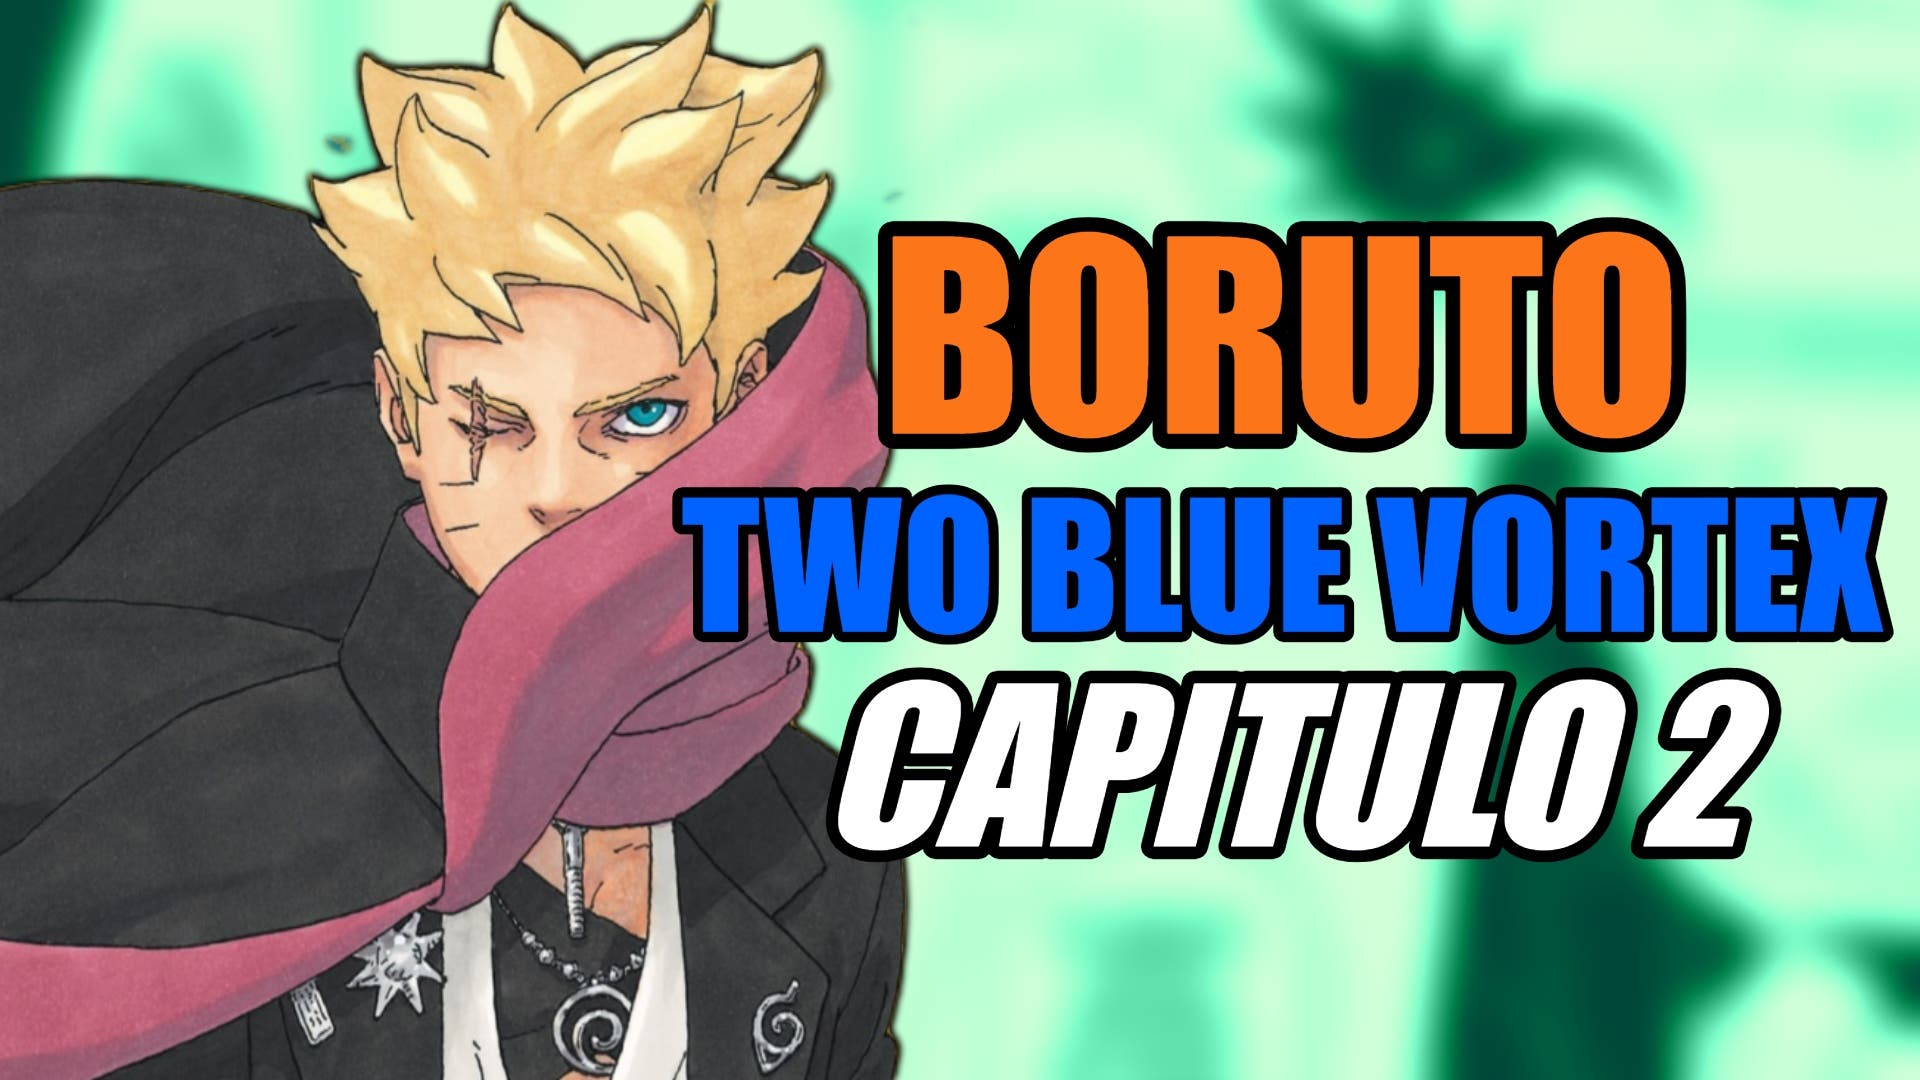 Boruto Two Blue Vortex Capítulo 02 - Spoilers e data de lançamento -  Critical Hits